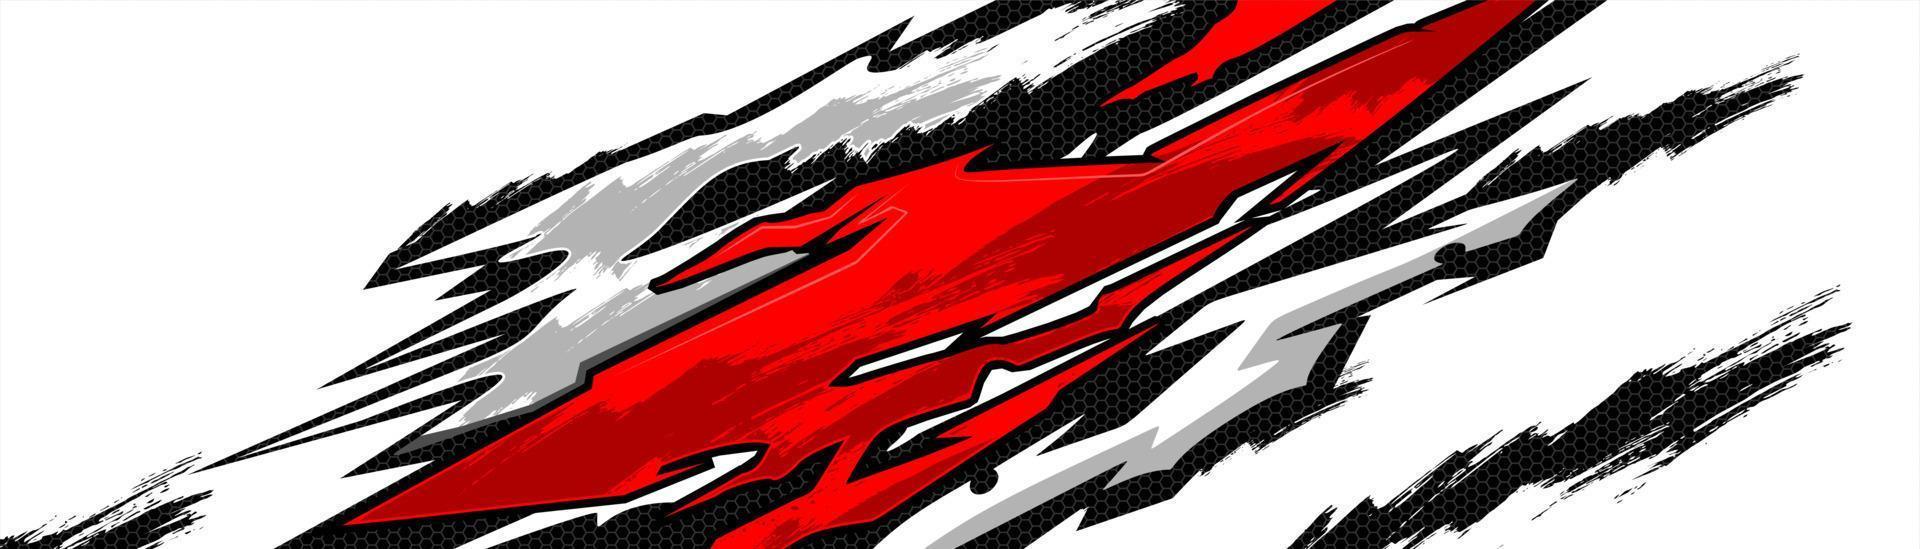 bil dekal design vektor. grafisk abstrakt stripe racing bakgrundssatsdesign för wrap-fordon, racerbil, rally, äventyr och livery vektor